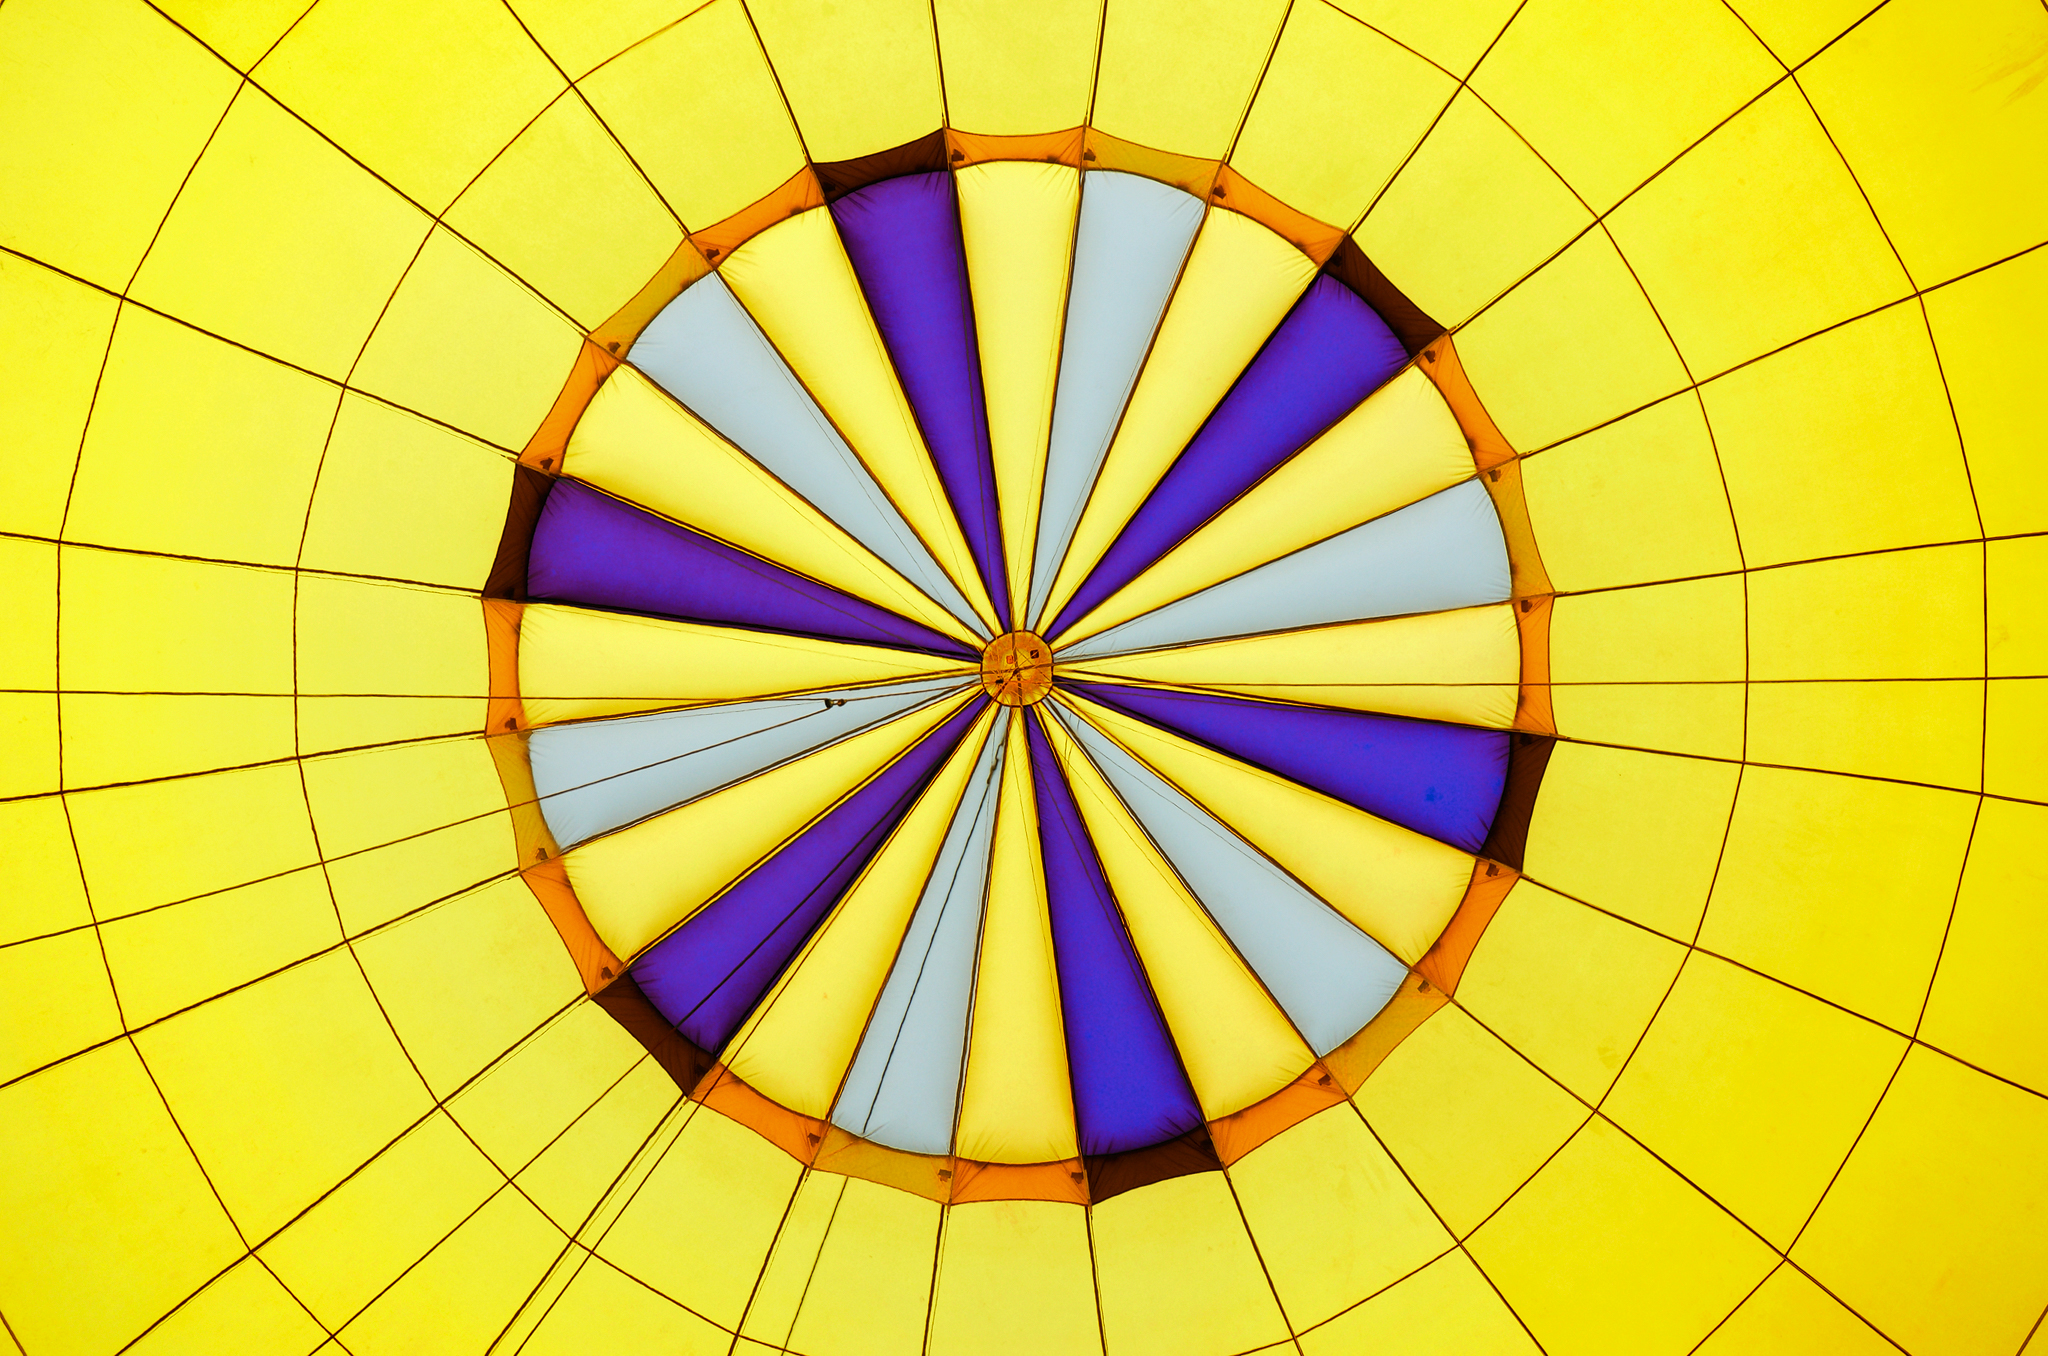 Very yellow symmetry